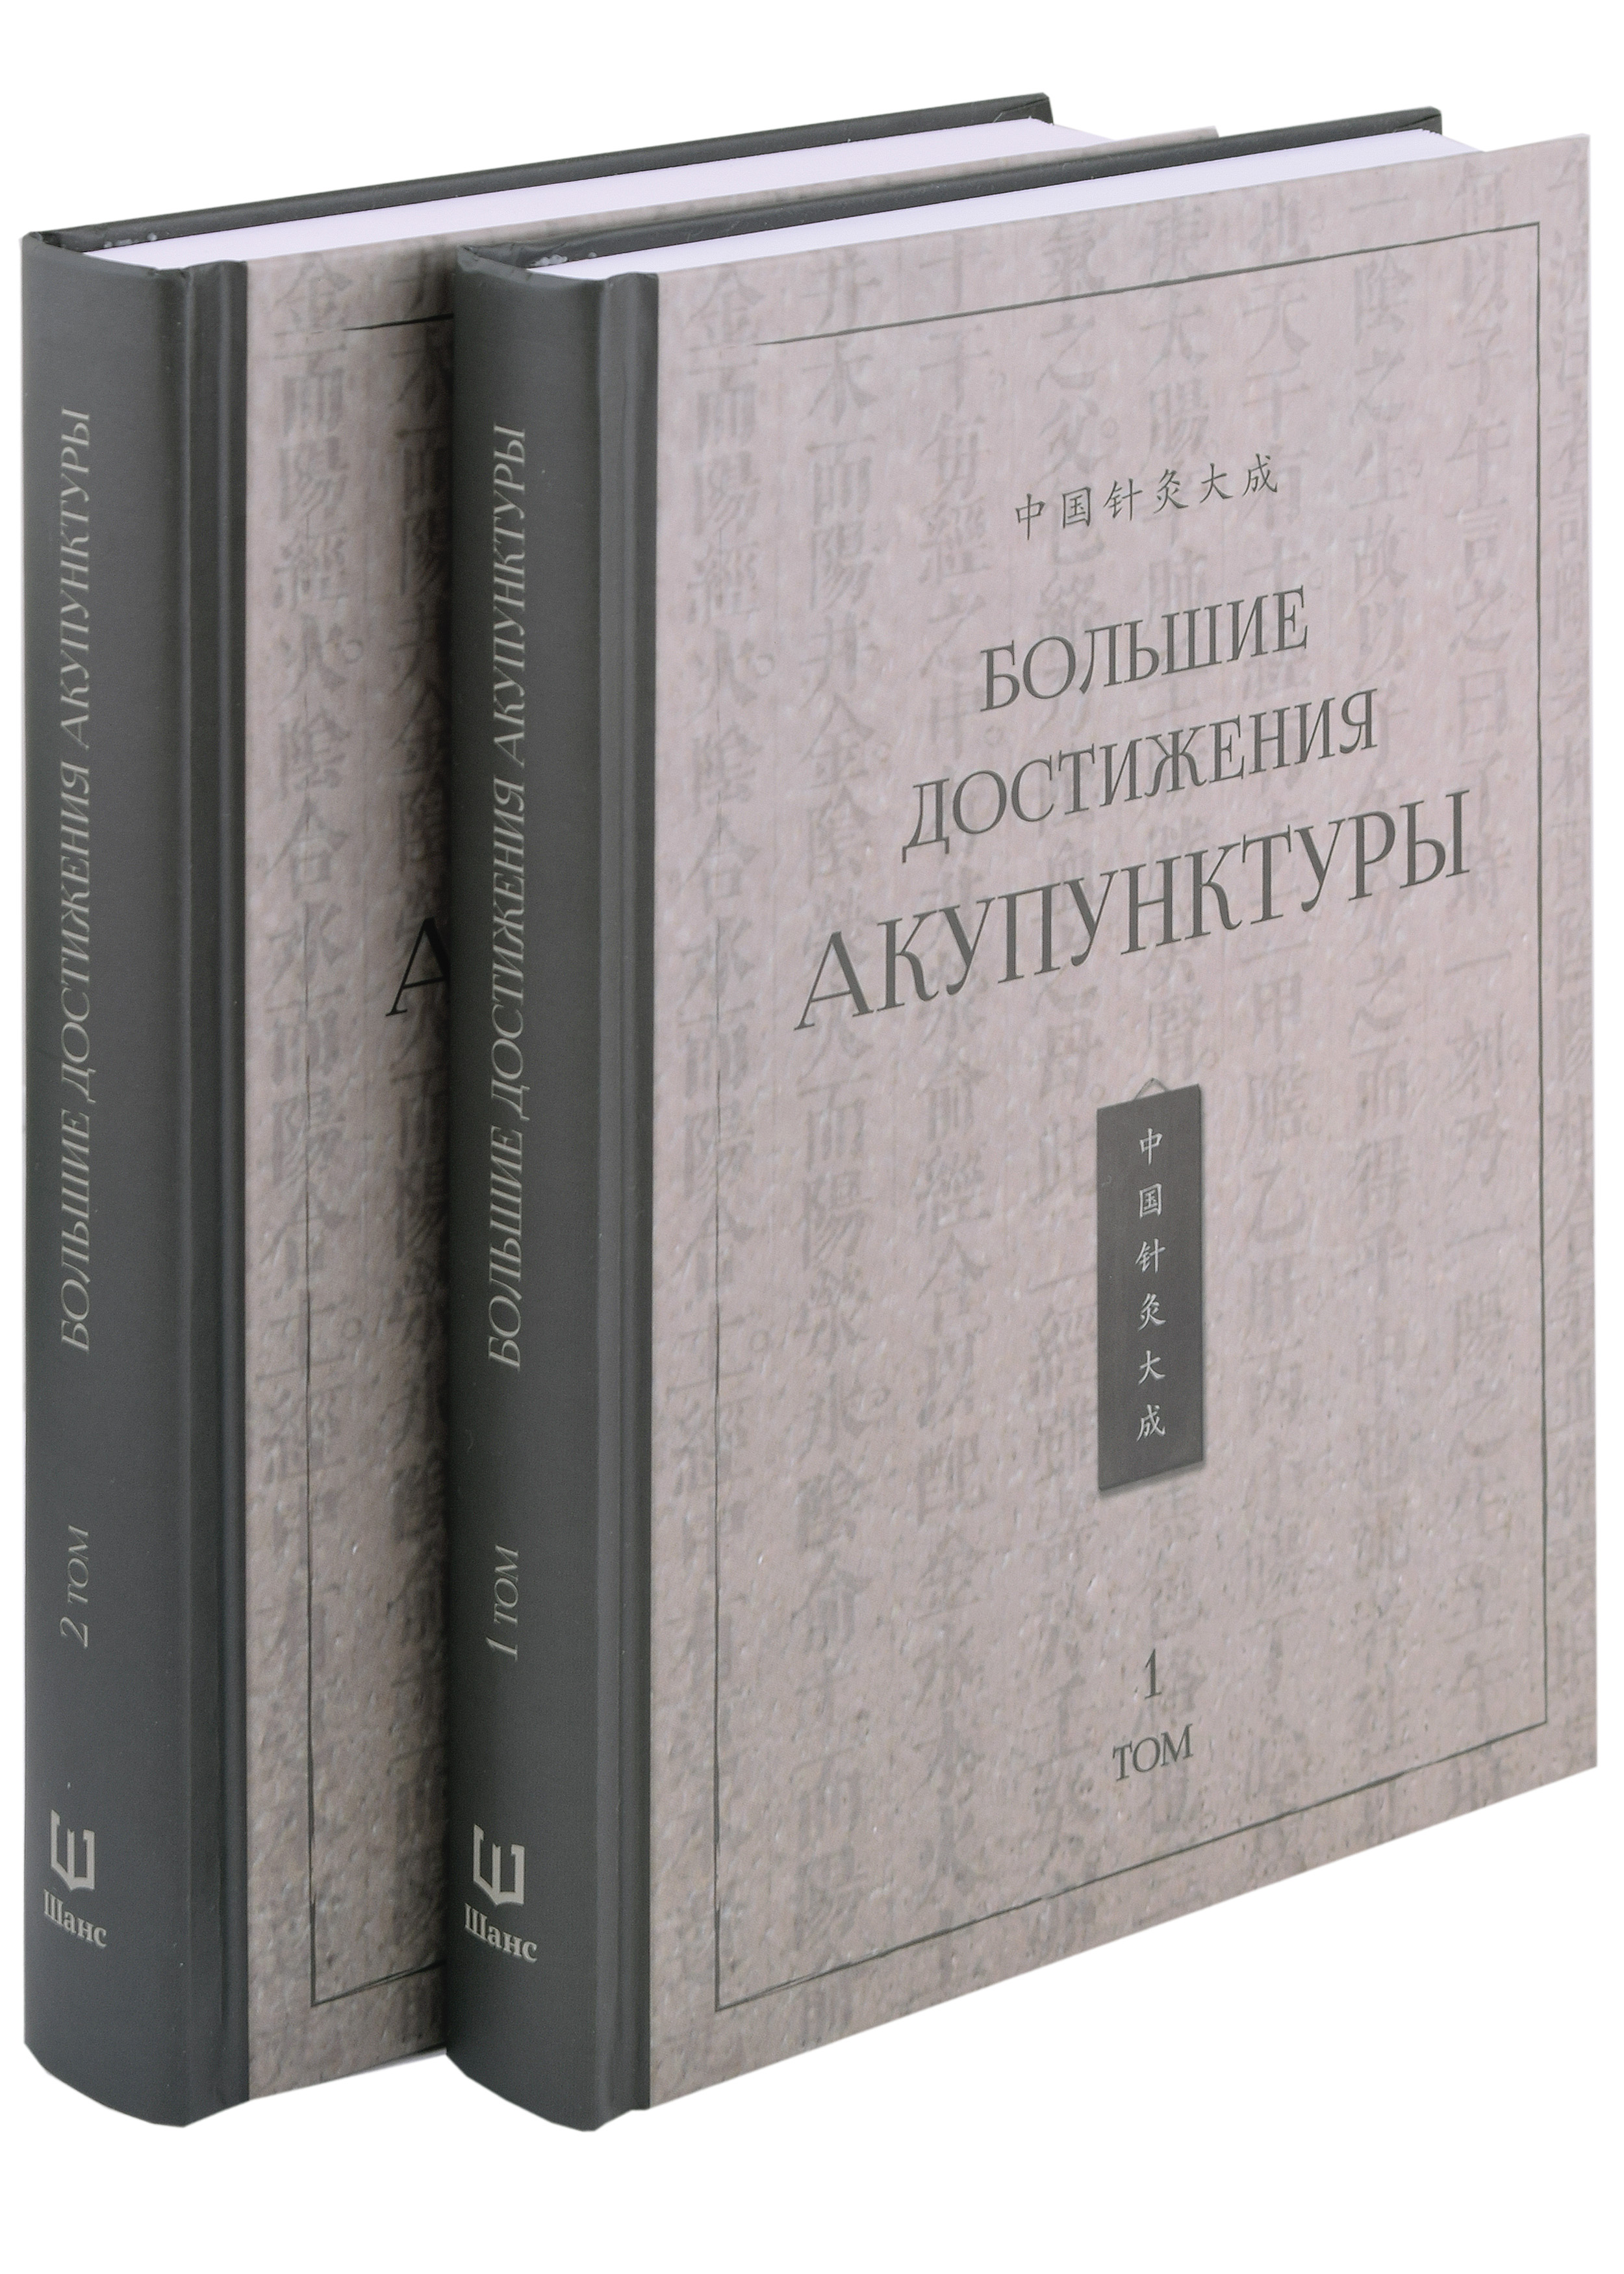 Большие достижения акупунктуры: в 2-х томах (комплект из 2-х книг) фокин валерий николаевич руководство по акупунктуре или пальцевый чжэнь